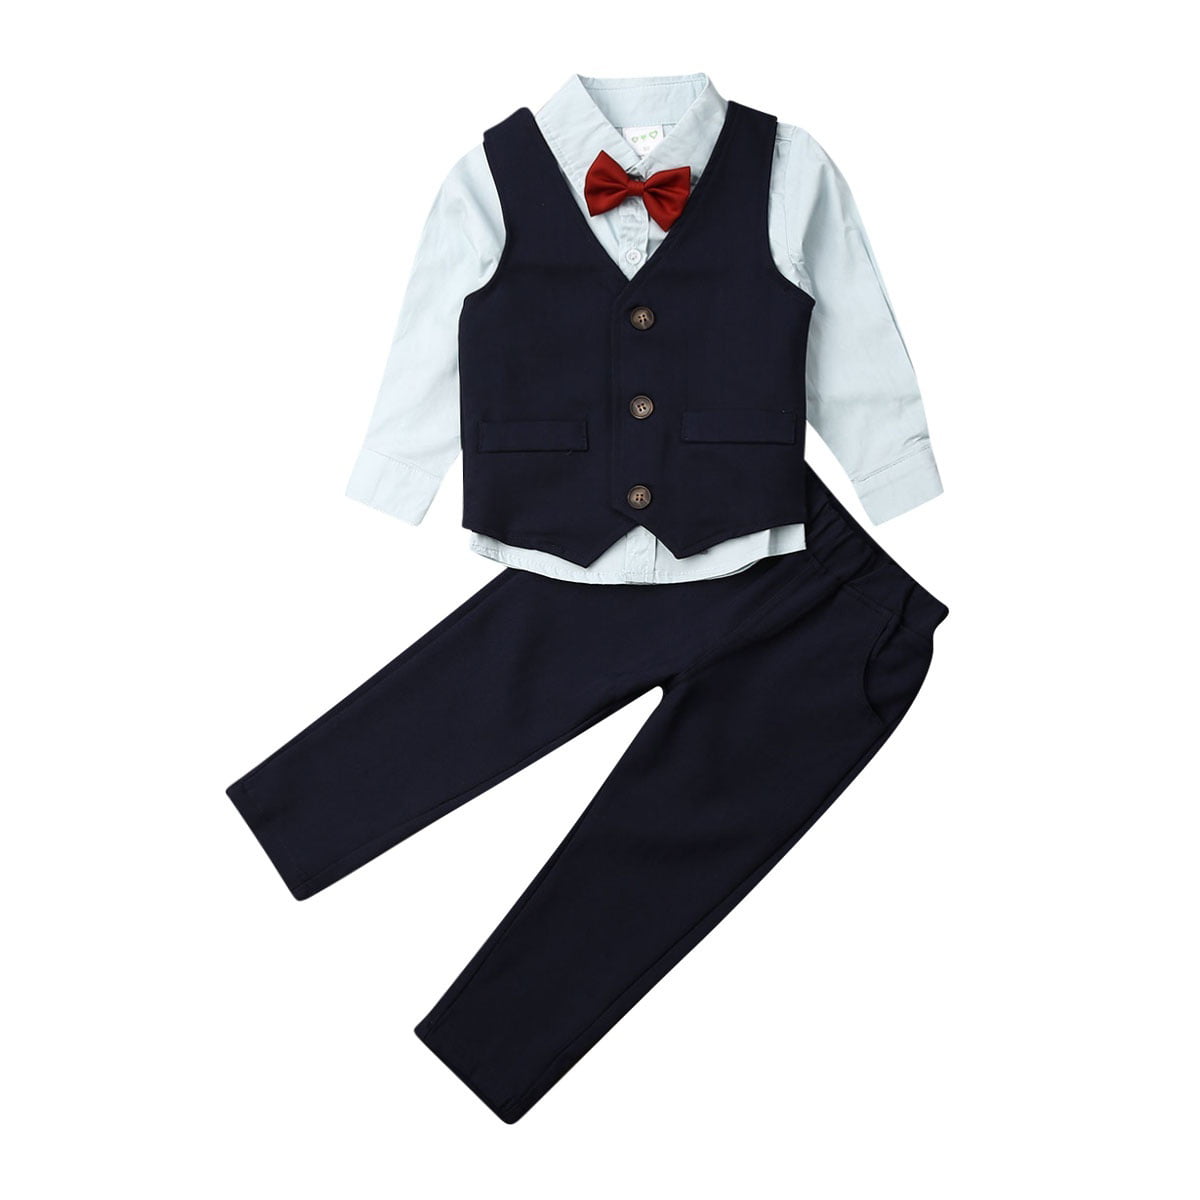 Kids Baby Gentlemen Boys Clothes Cotton Top+Pants Suit Tuxedo Boys ...